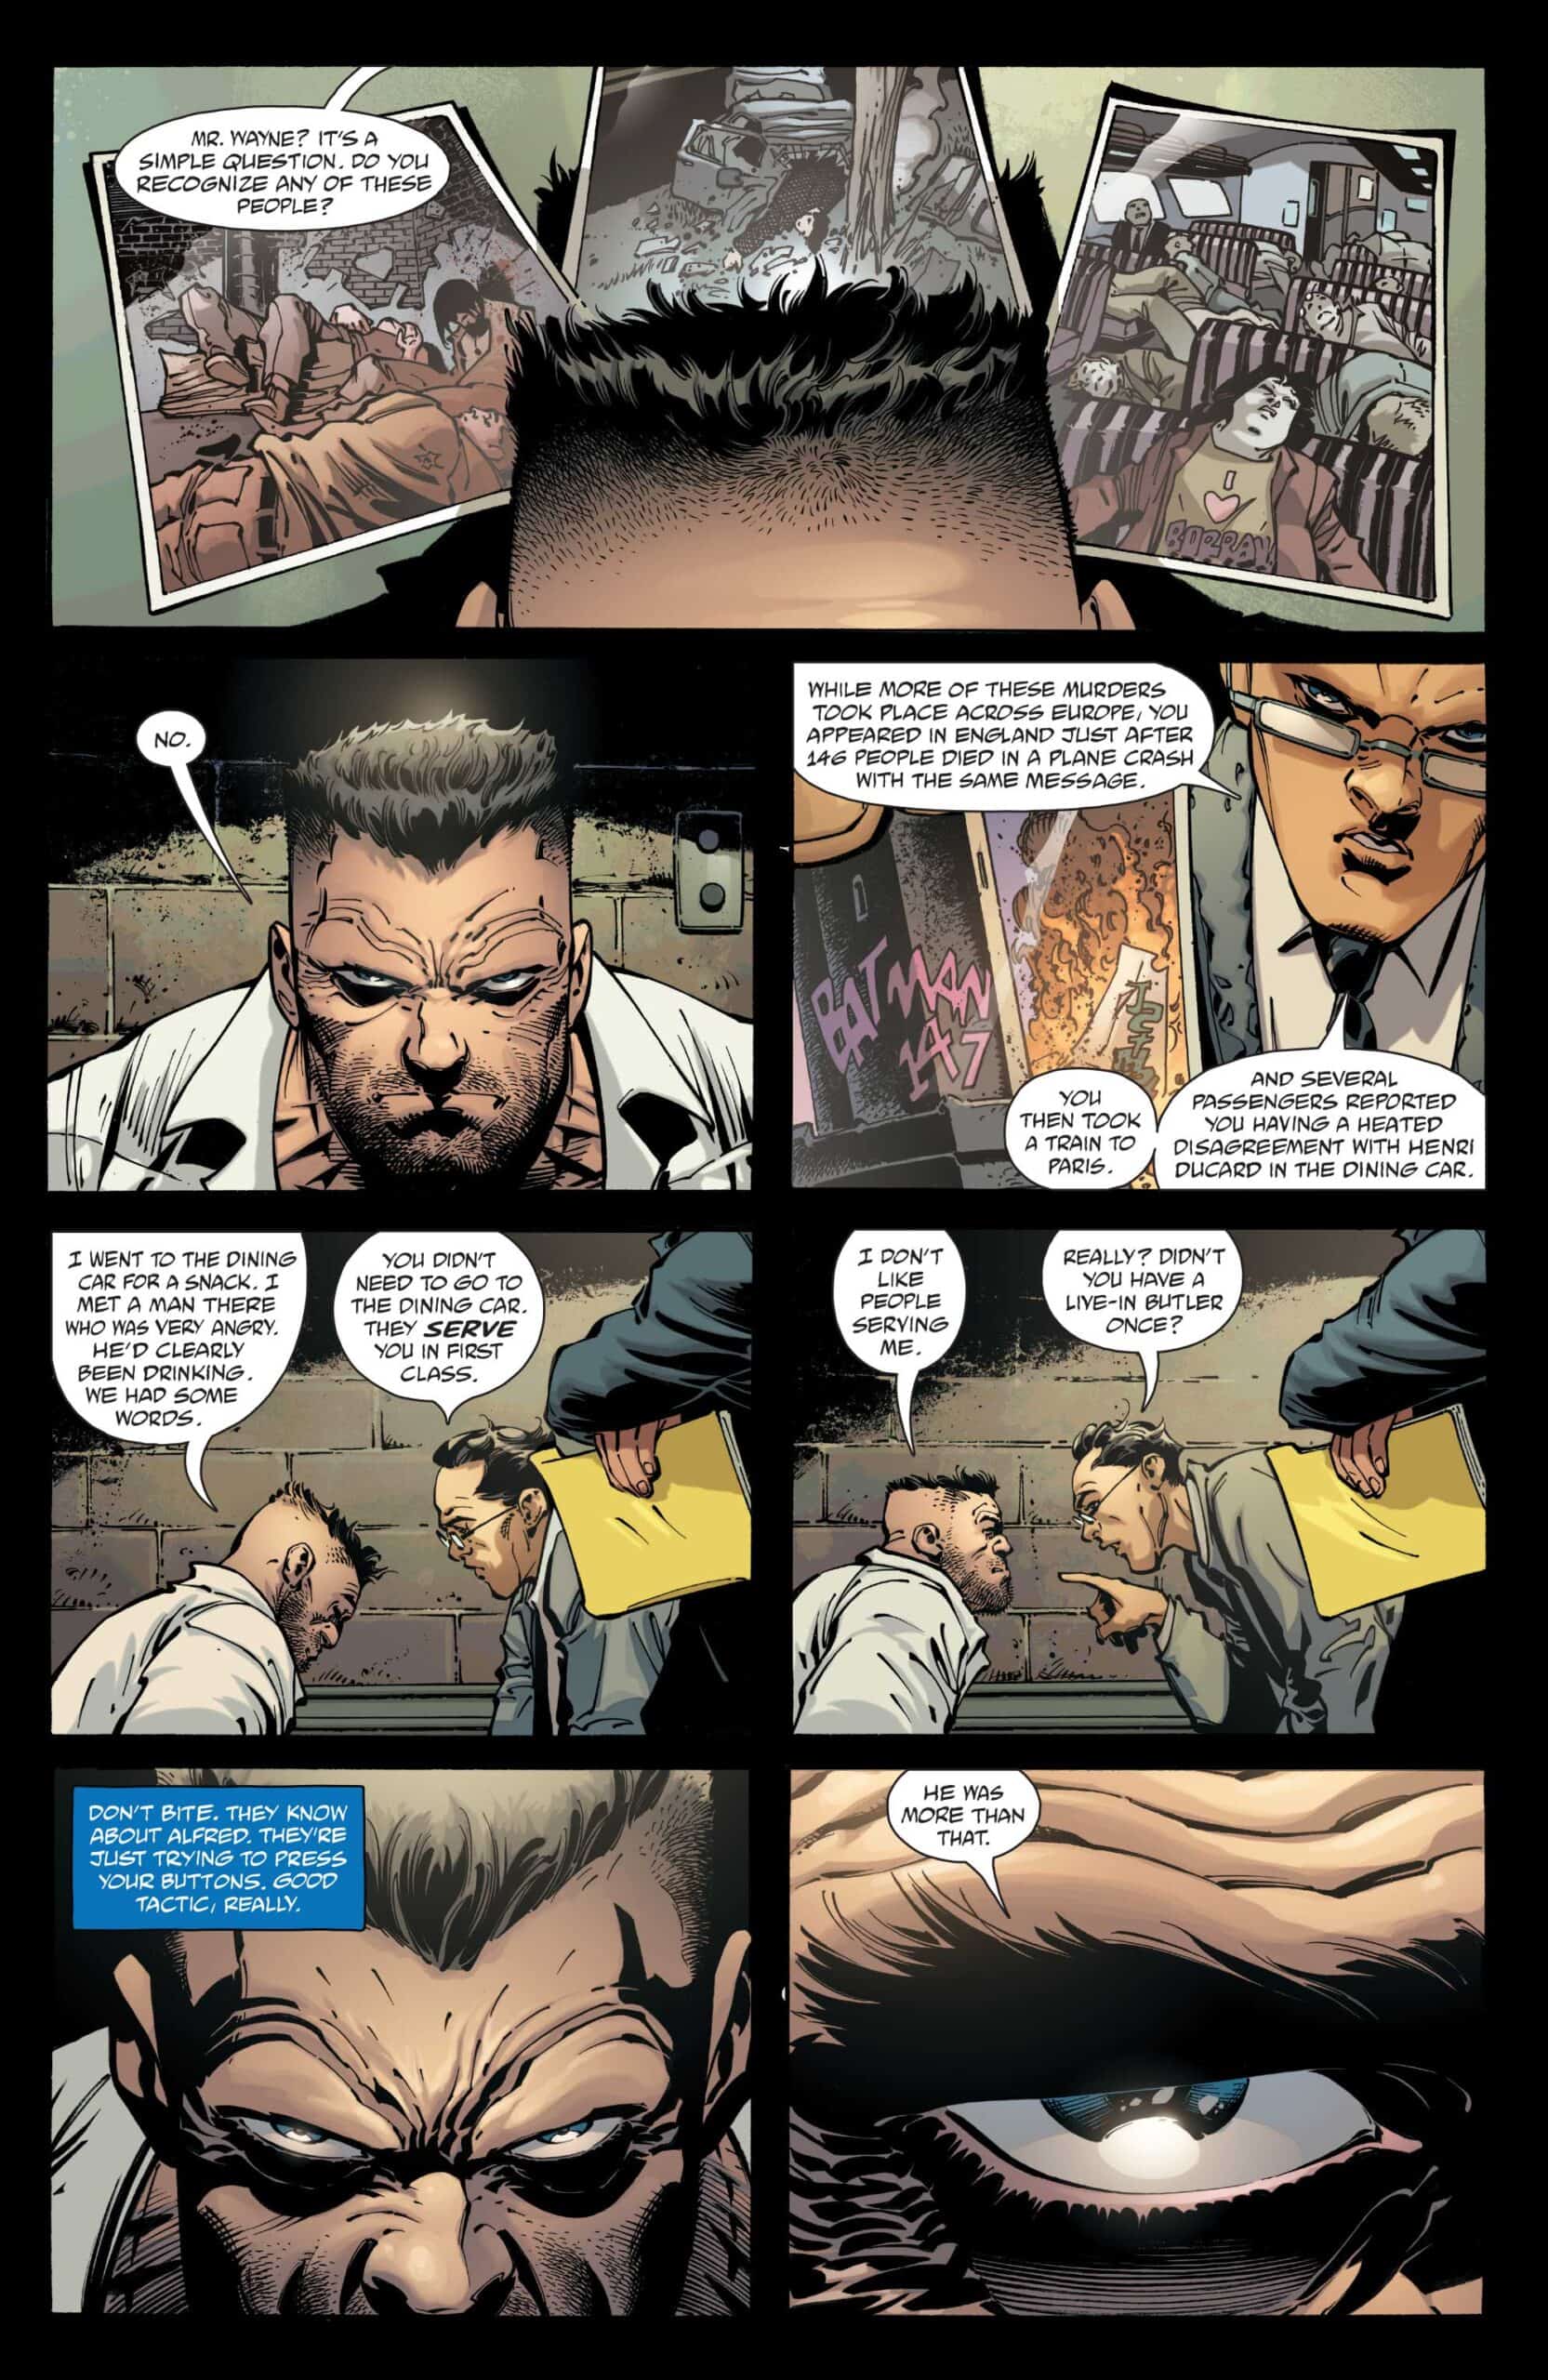 SNEAK PEEK: Preview of DC Comics' Batman: The Detective #4 - Comic Watch